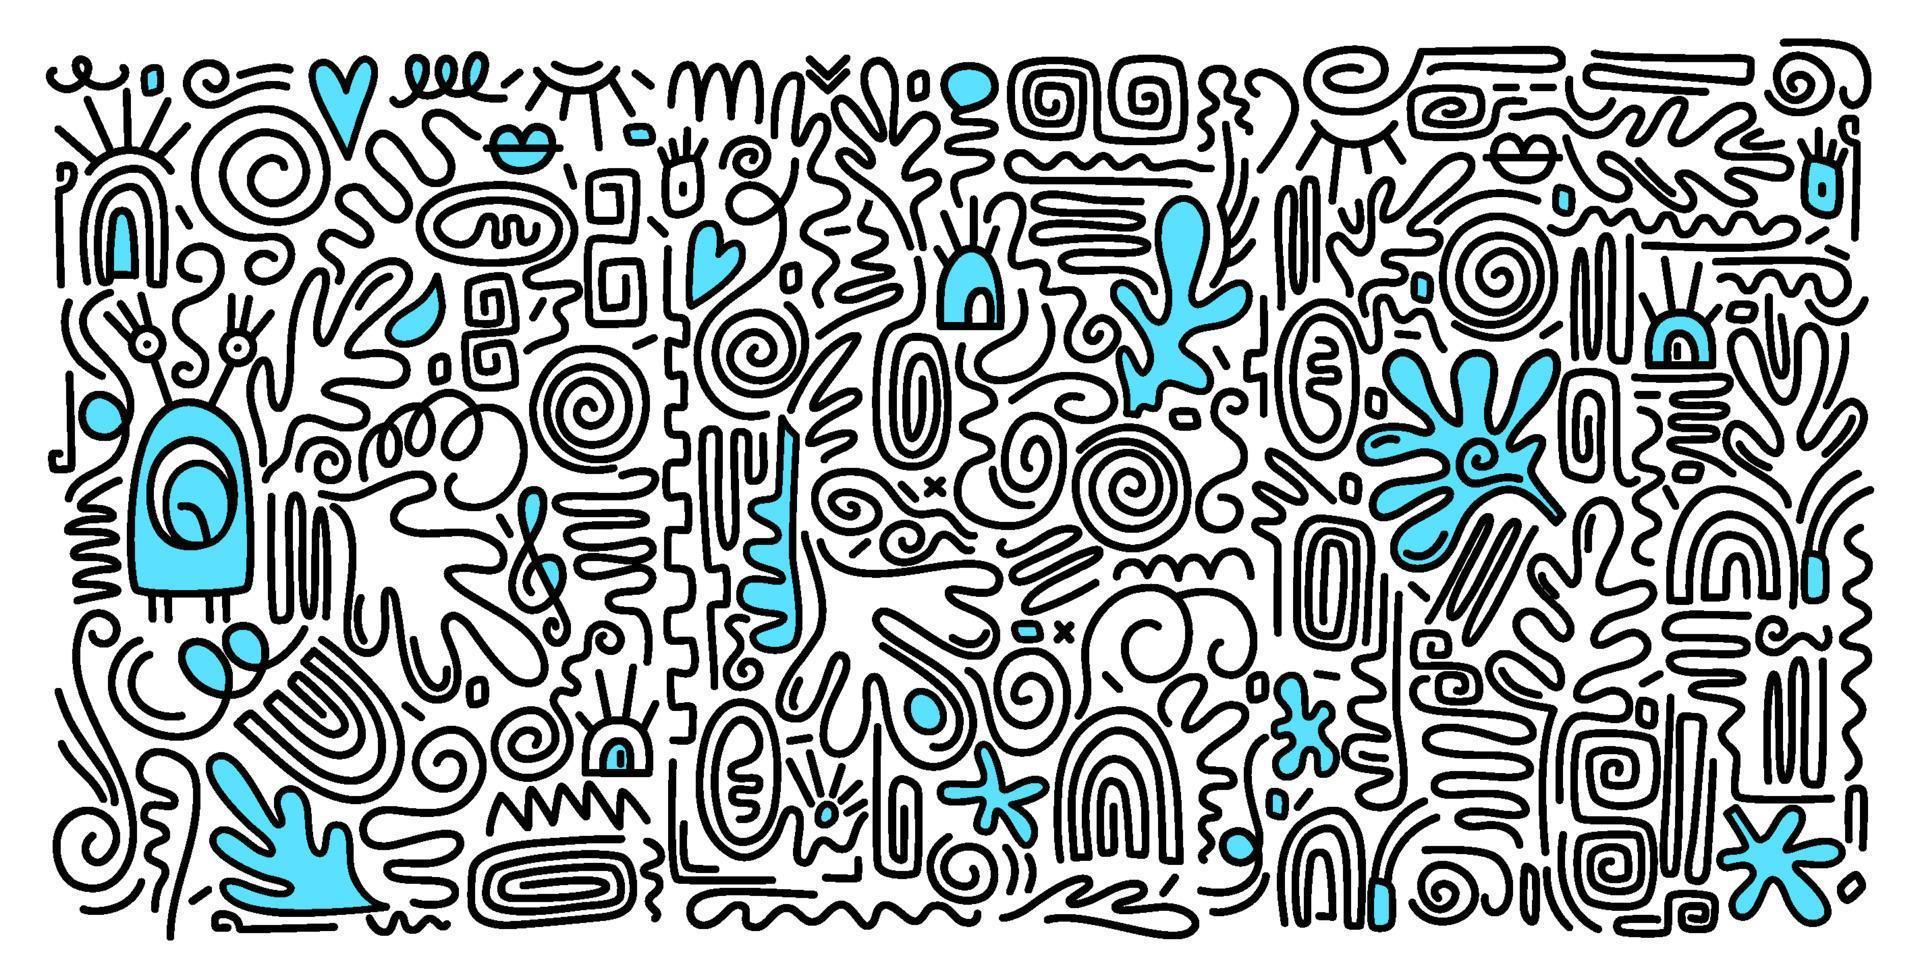 pegatinas vectoriales y etiquetas en estilo doodle. patrón imprimible contemporáneo estético con formas de trazo de pincel de línea elegante mínima abstracta y línea en colores blancos. fondo de garabato infantil simple. vector